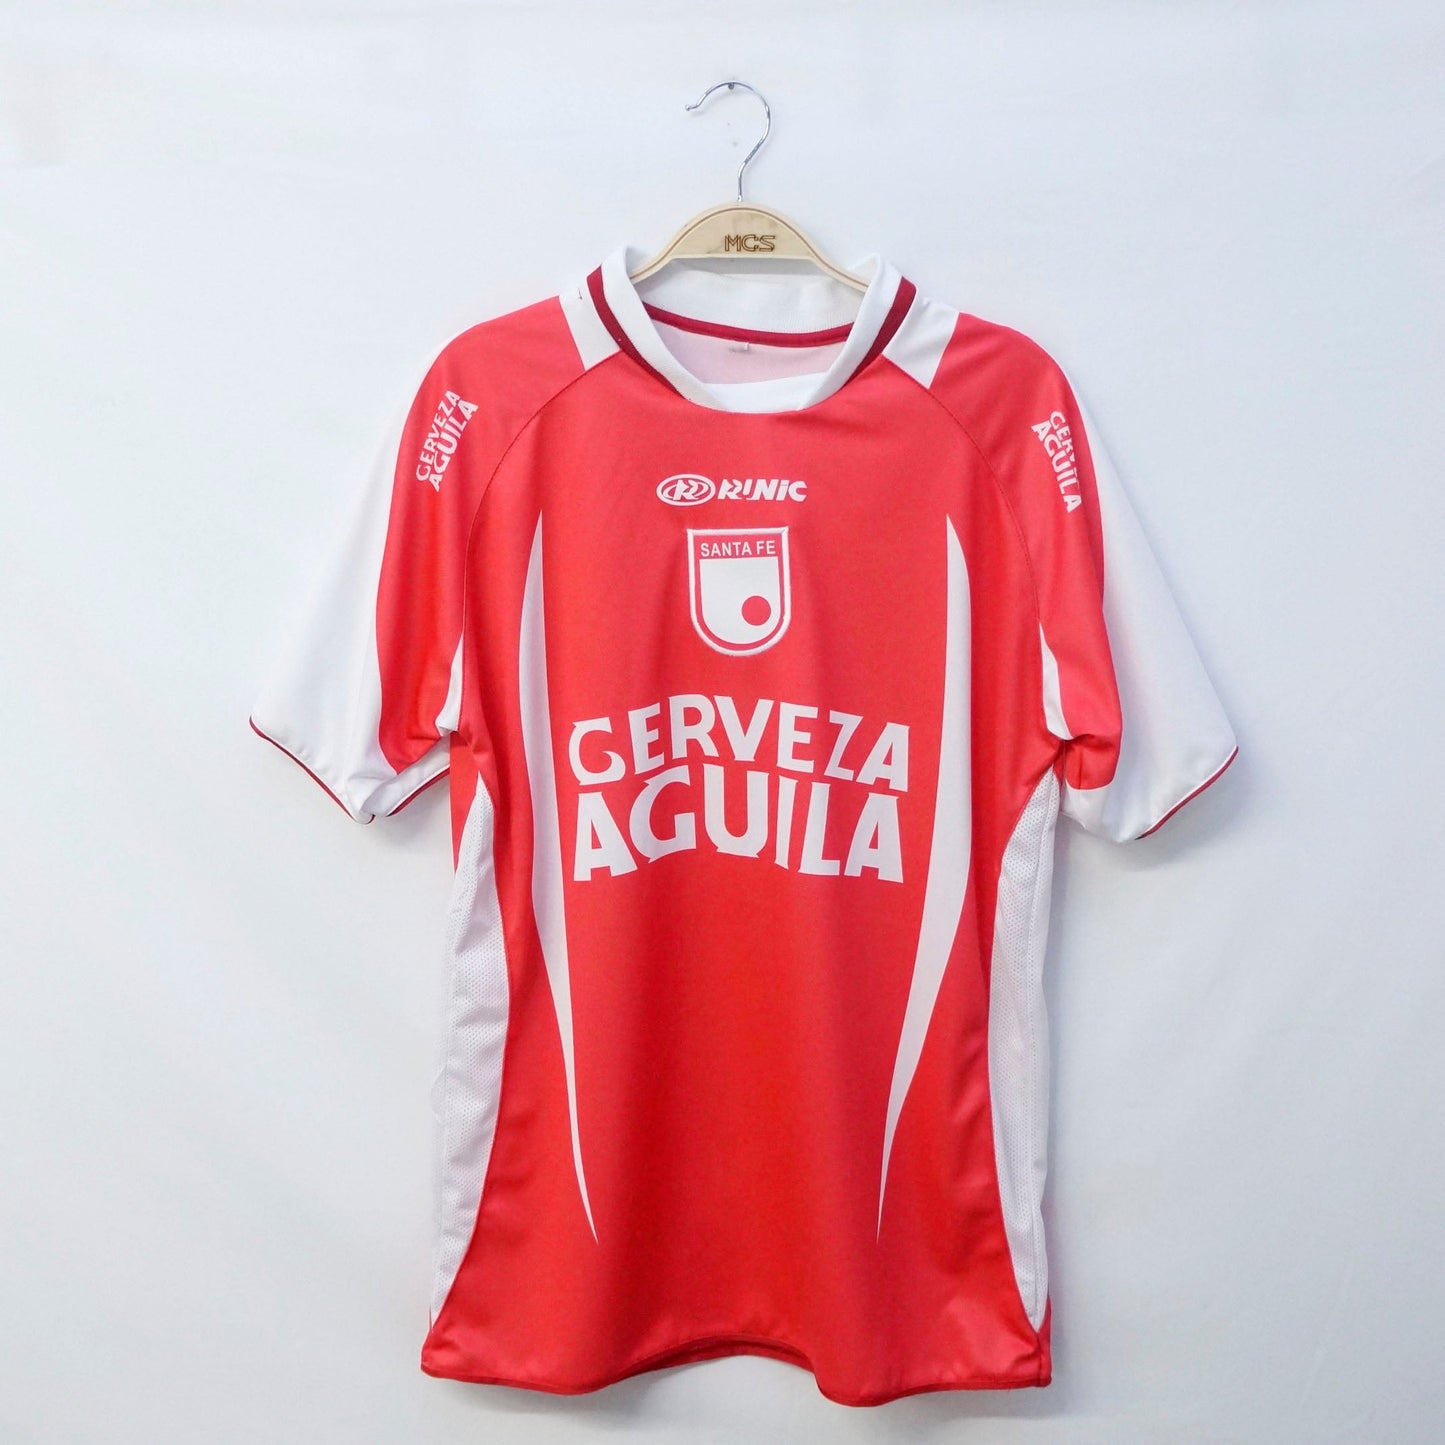 Camiseta Independiente Santa Fe Runic 2003 Saldo